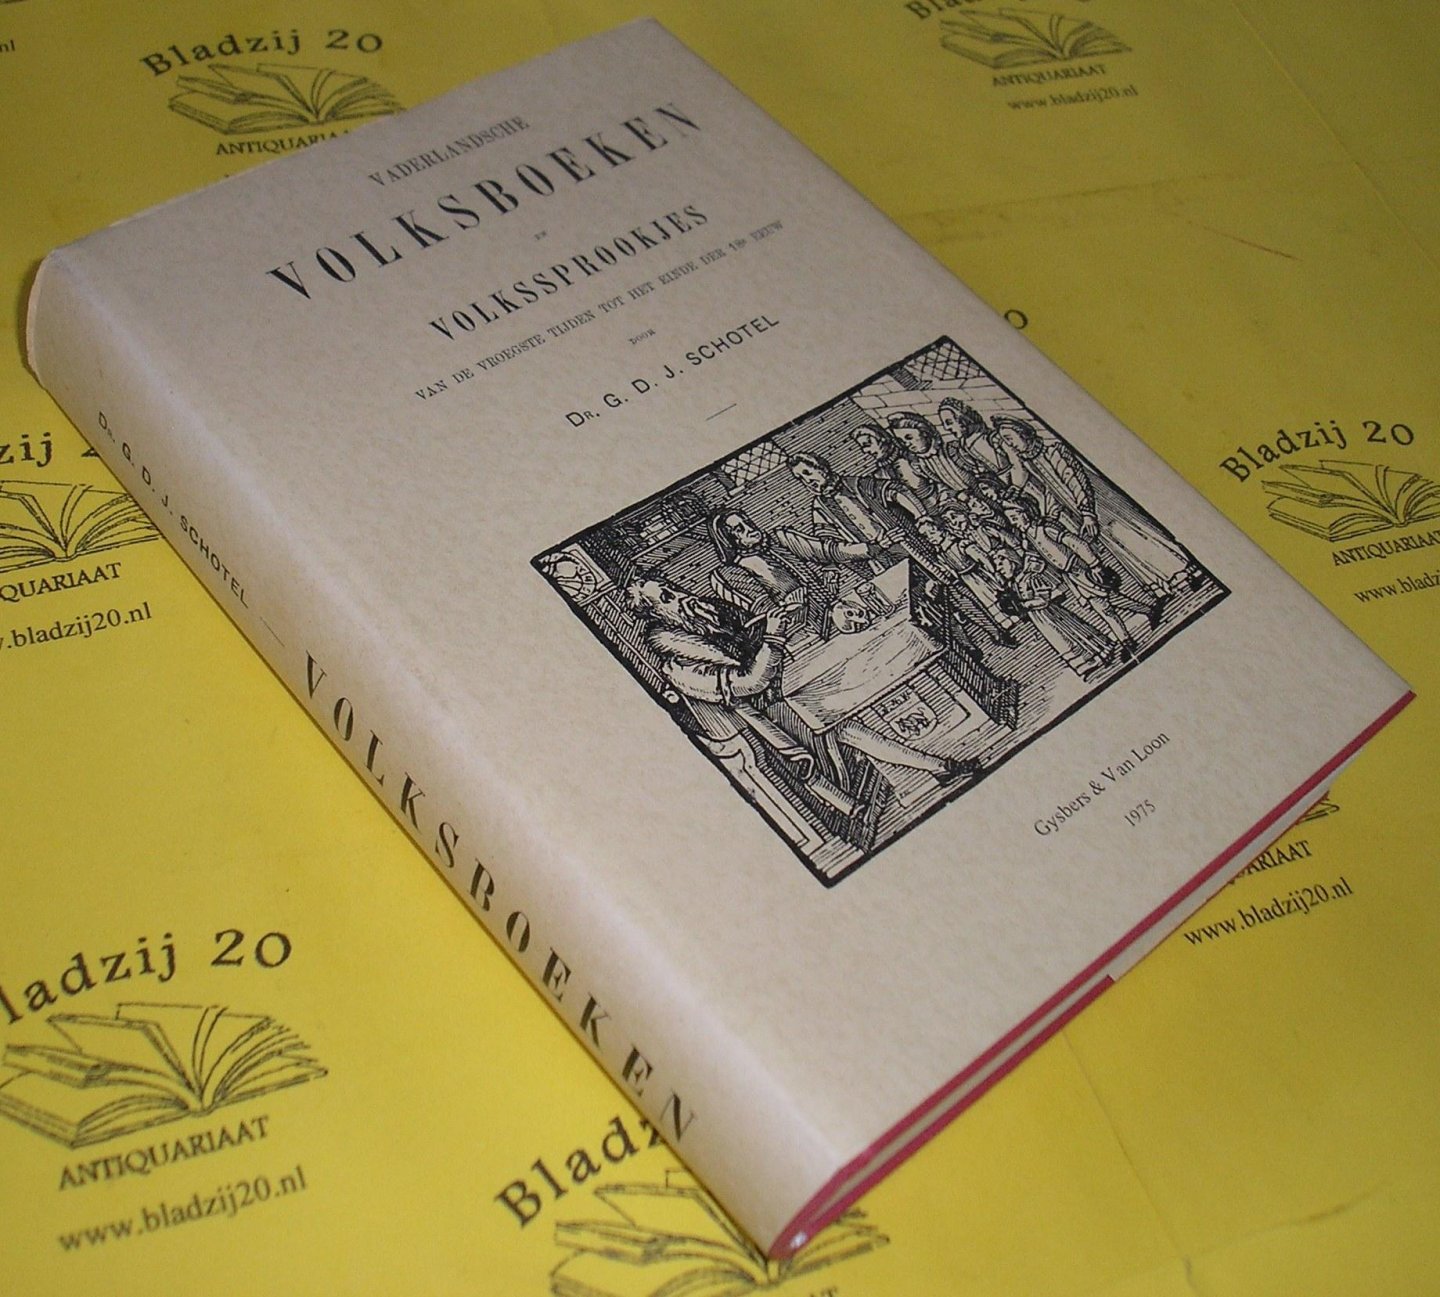 Schotel, G.D.J. - Vaderlandsche volksboeken en volkssprookjes van de vroegste tijden tot het eind der 18e eeuw.